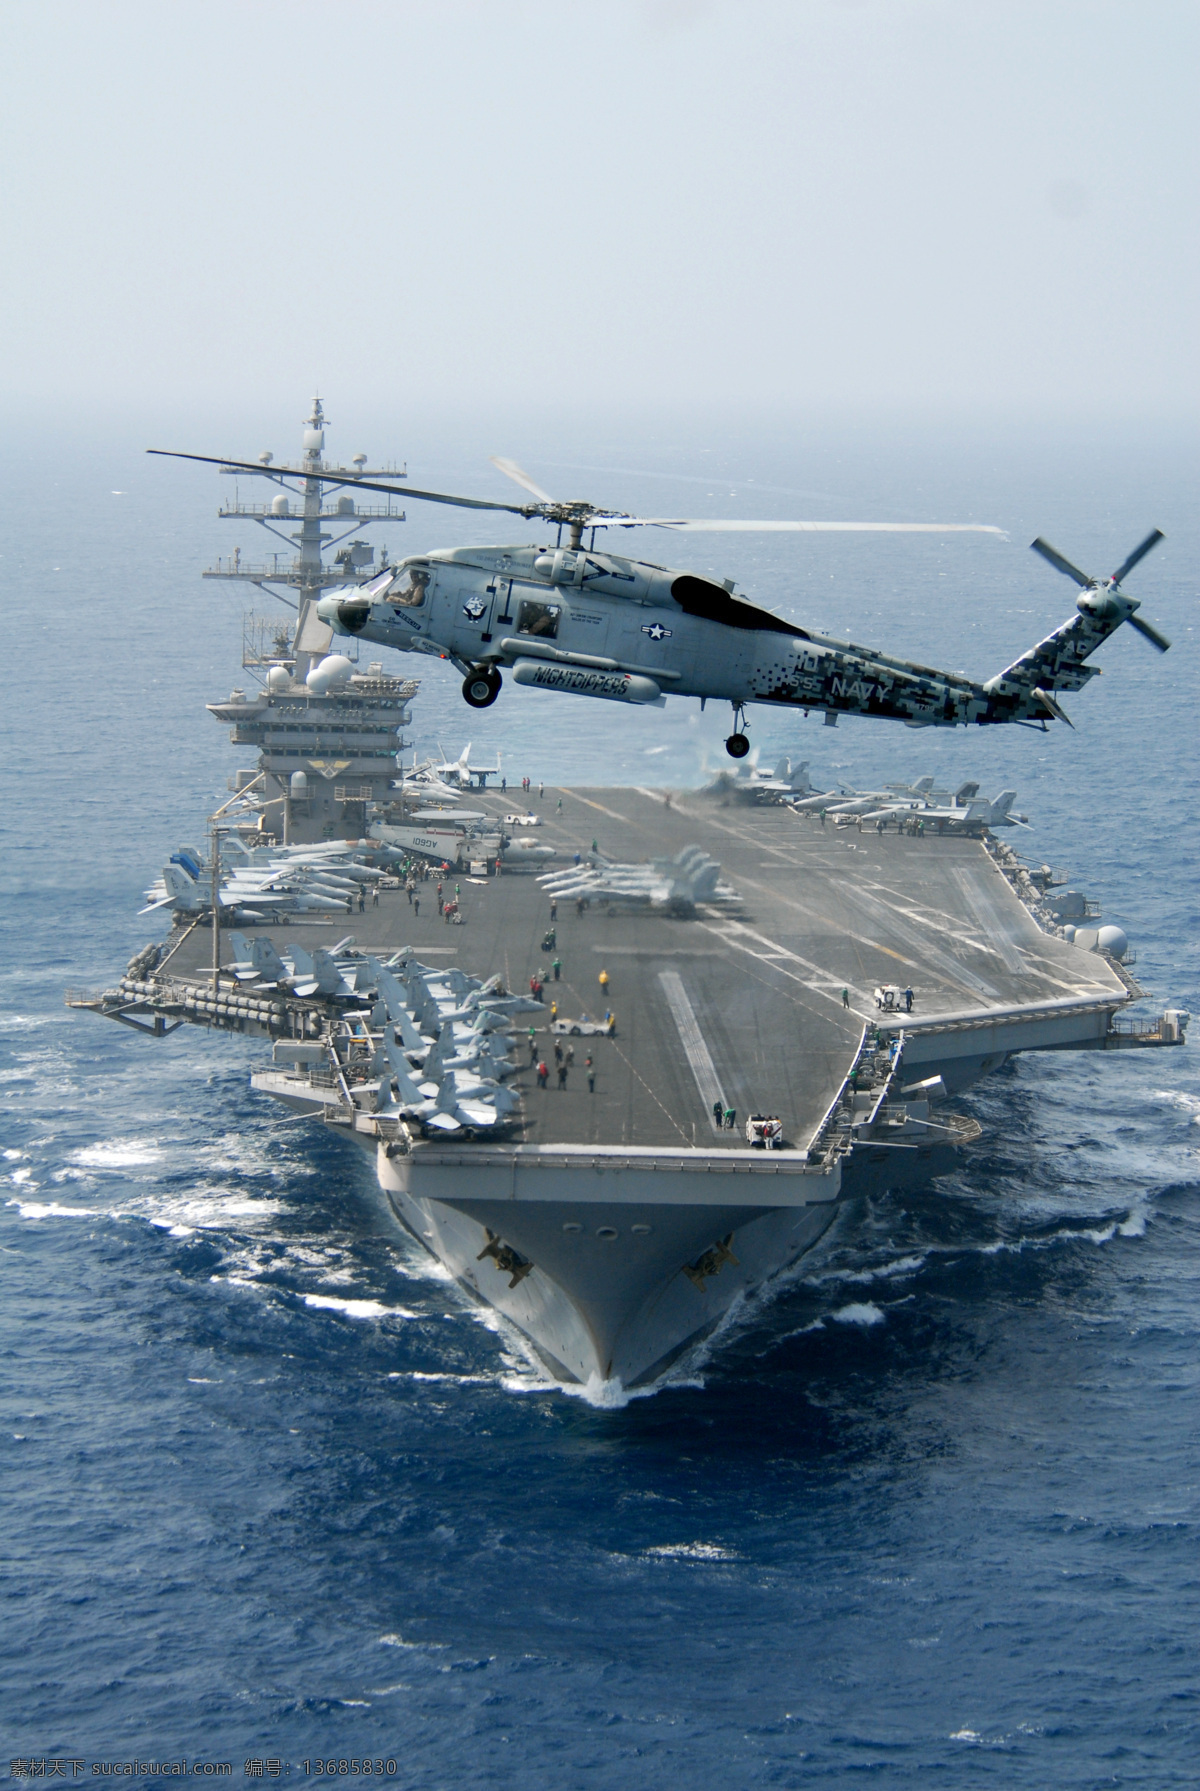 航空母舰 美国海军 浩瀚大海 航母 武装直升机 军事武器 现代科技